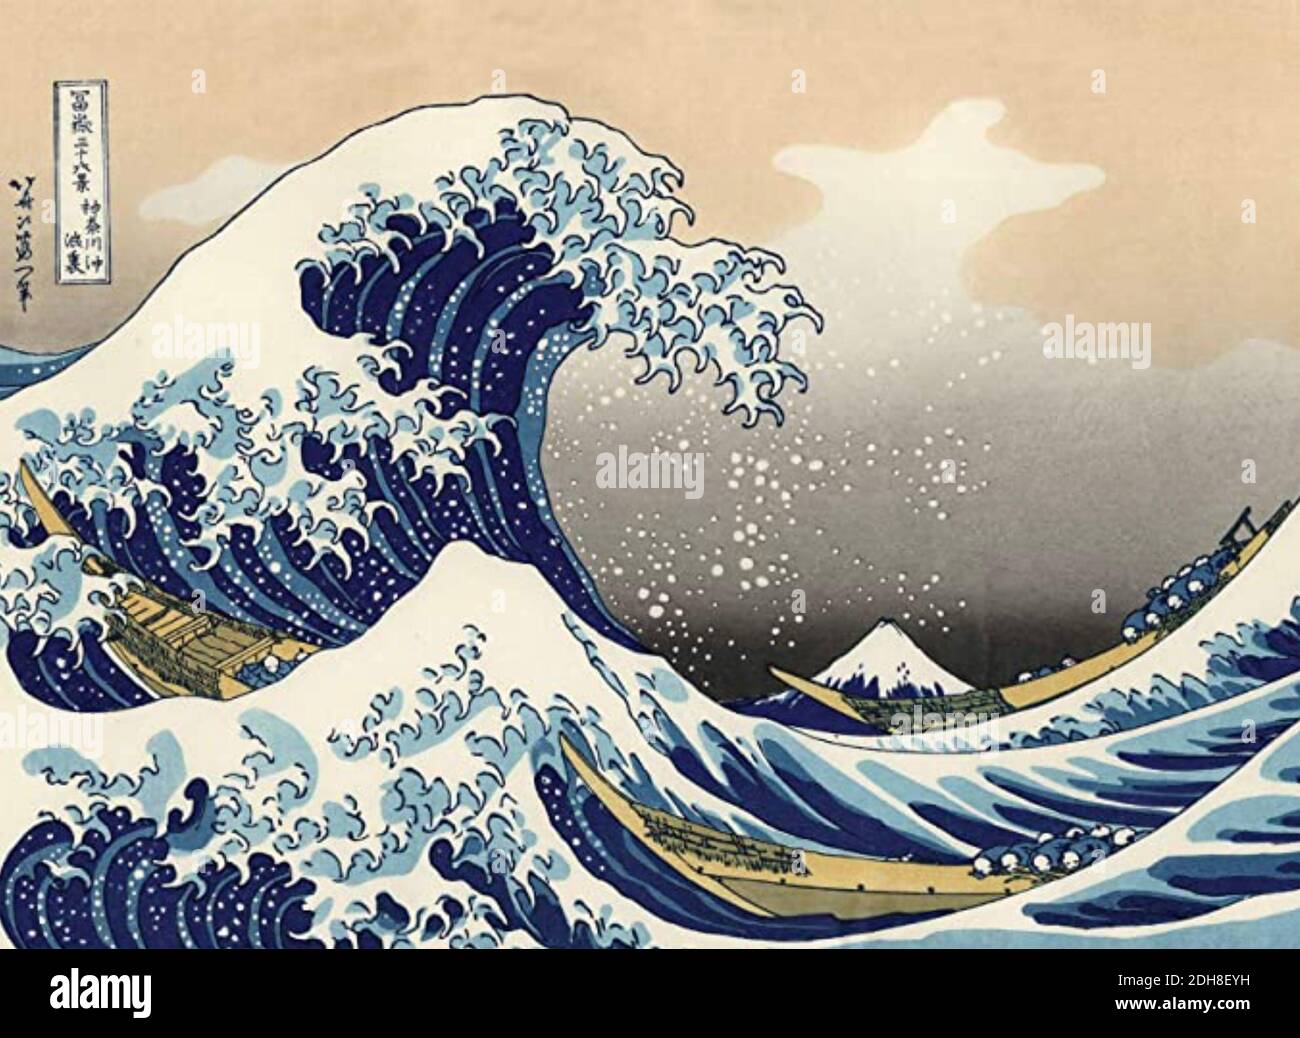 HOKUSAI (1760-1849) artiste japonais qui a créé trente-six vues sur le Mont Fuji entre 1830 et 1832. La grande vague au large de Kanagawa est l'impression la plus connue de la série. Banque D'Images